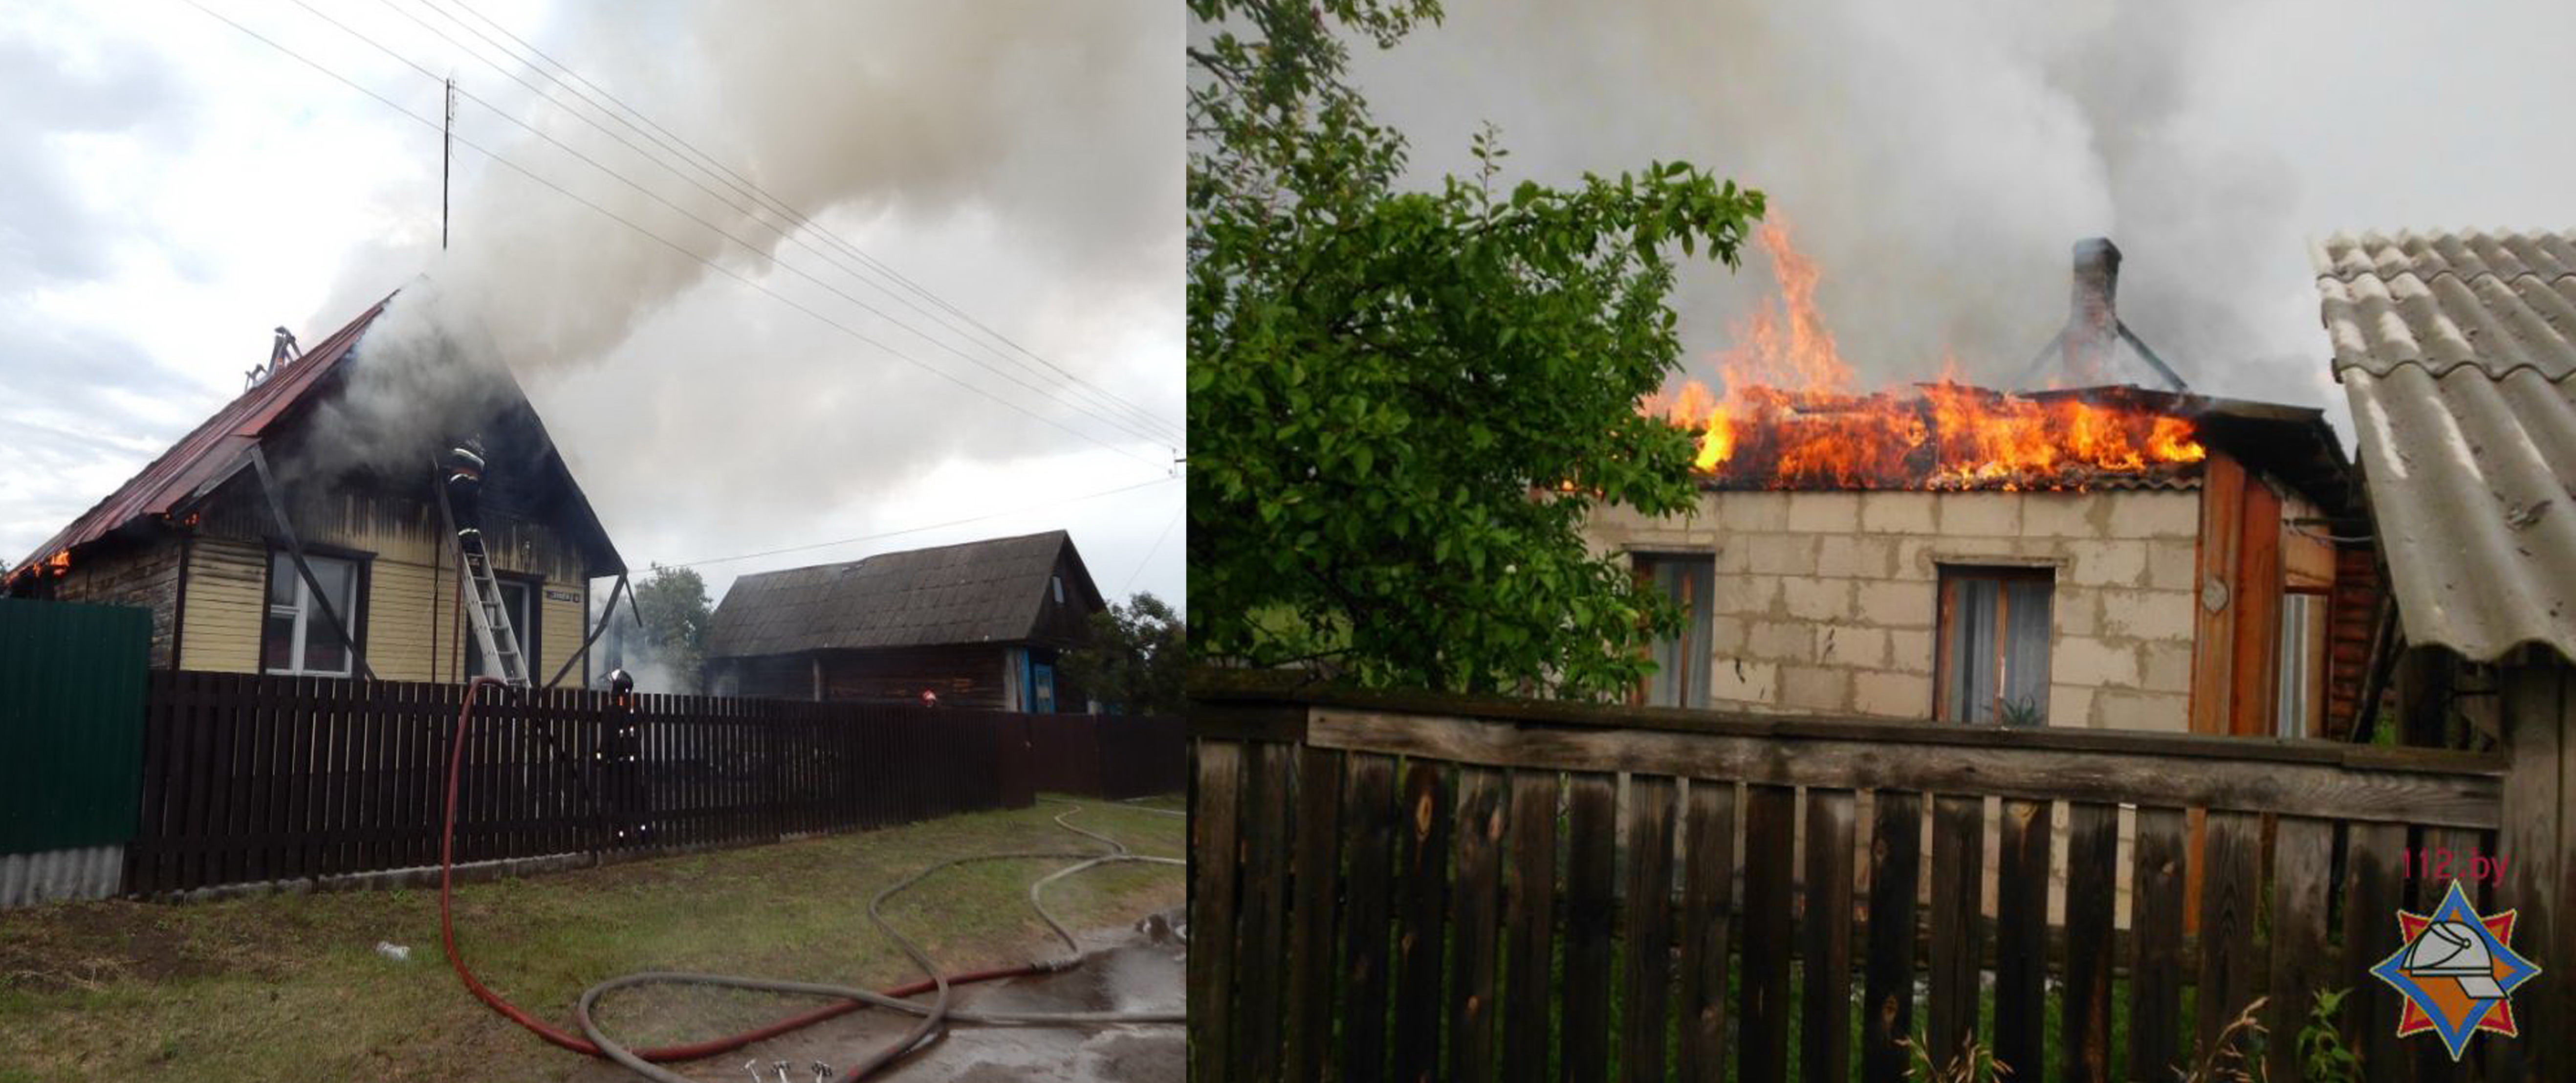 Молния второй раз поразила  жилье  в  Калинковичском районе 